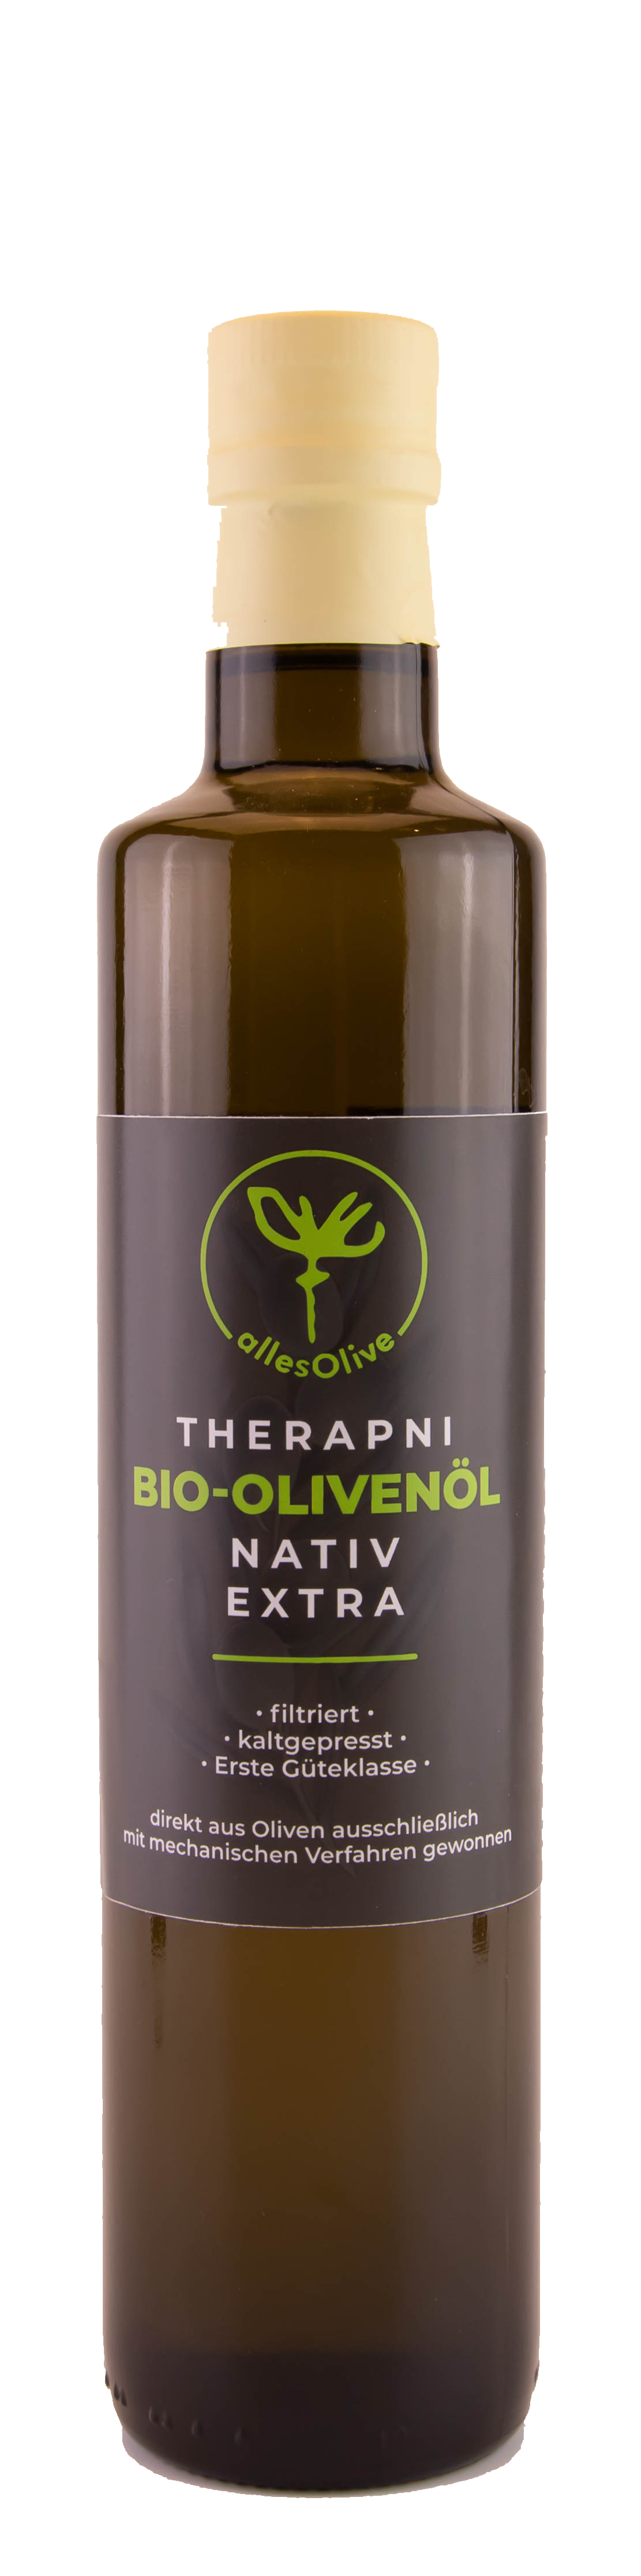 THERAPNI Aceite de Oliva Extra Virgen Nativos Bio, filtrado, botella de 500ml.